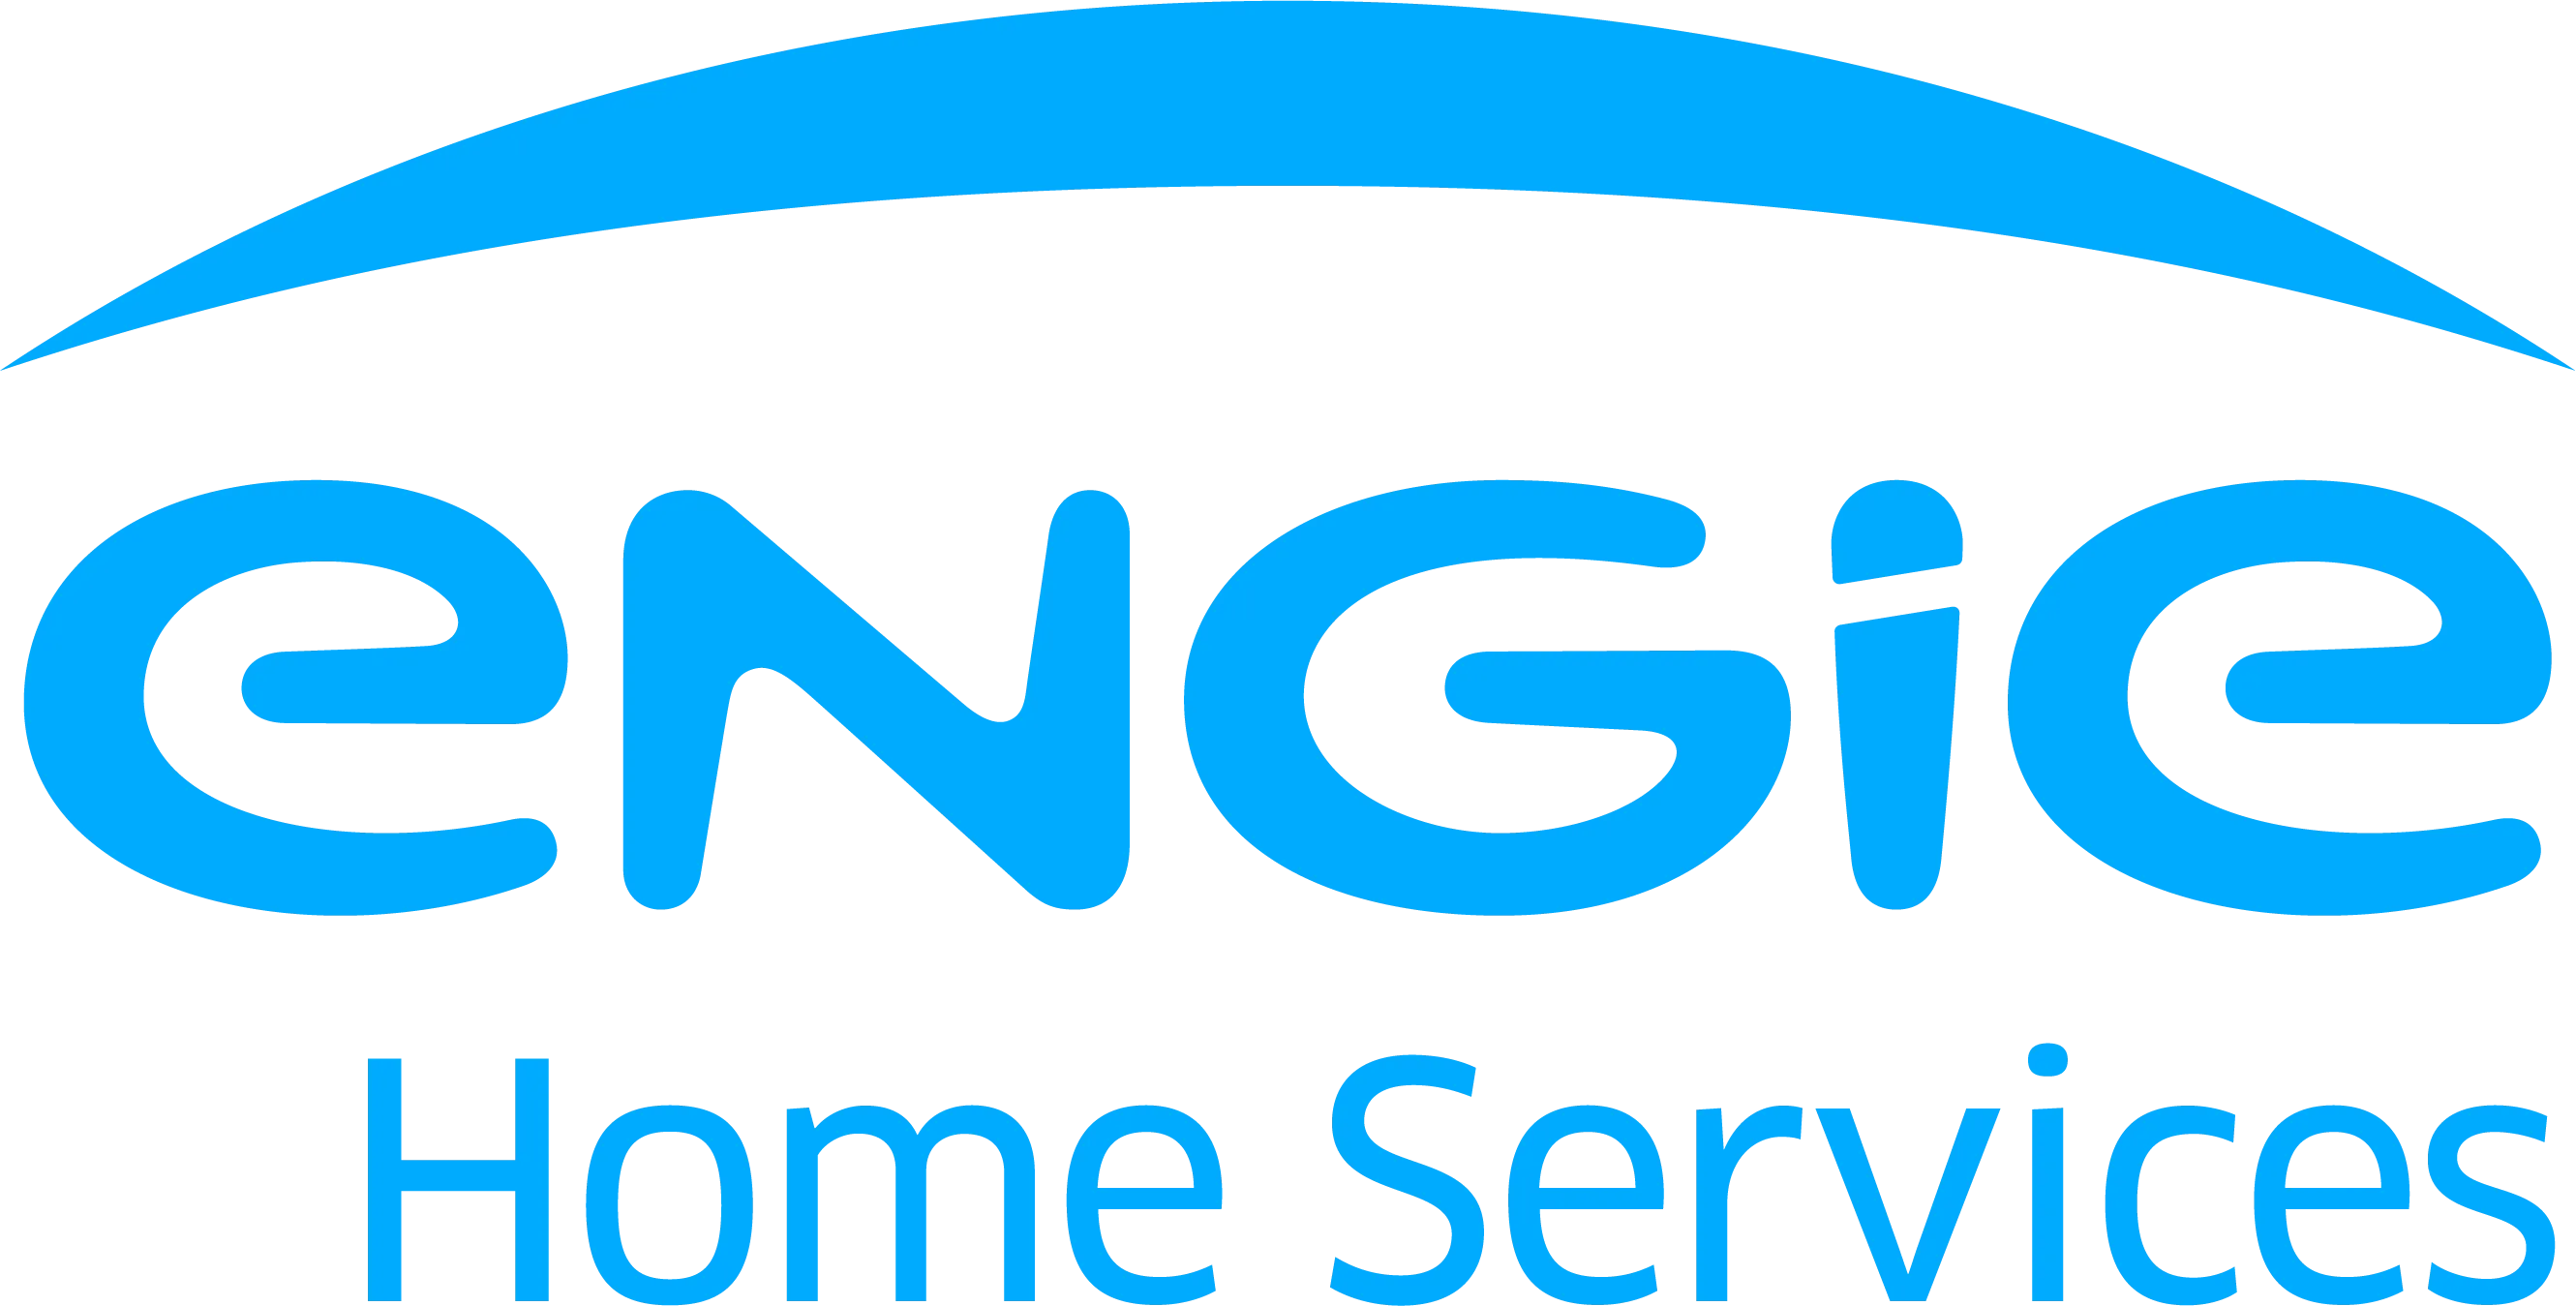 Voici le logo de la marque ENGIE HOME SERVICES qui représente son identité graphique.